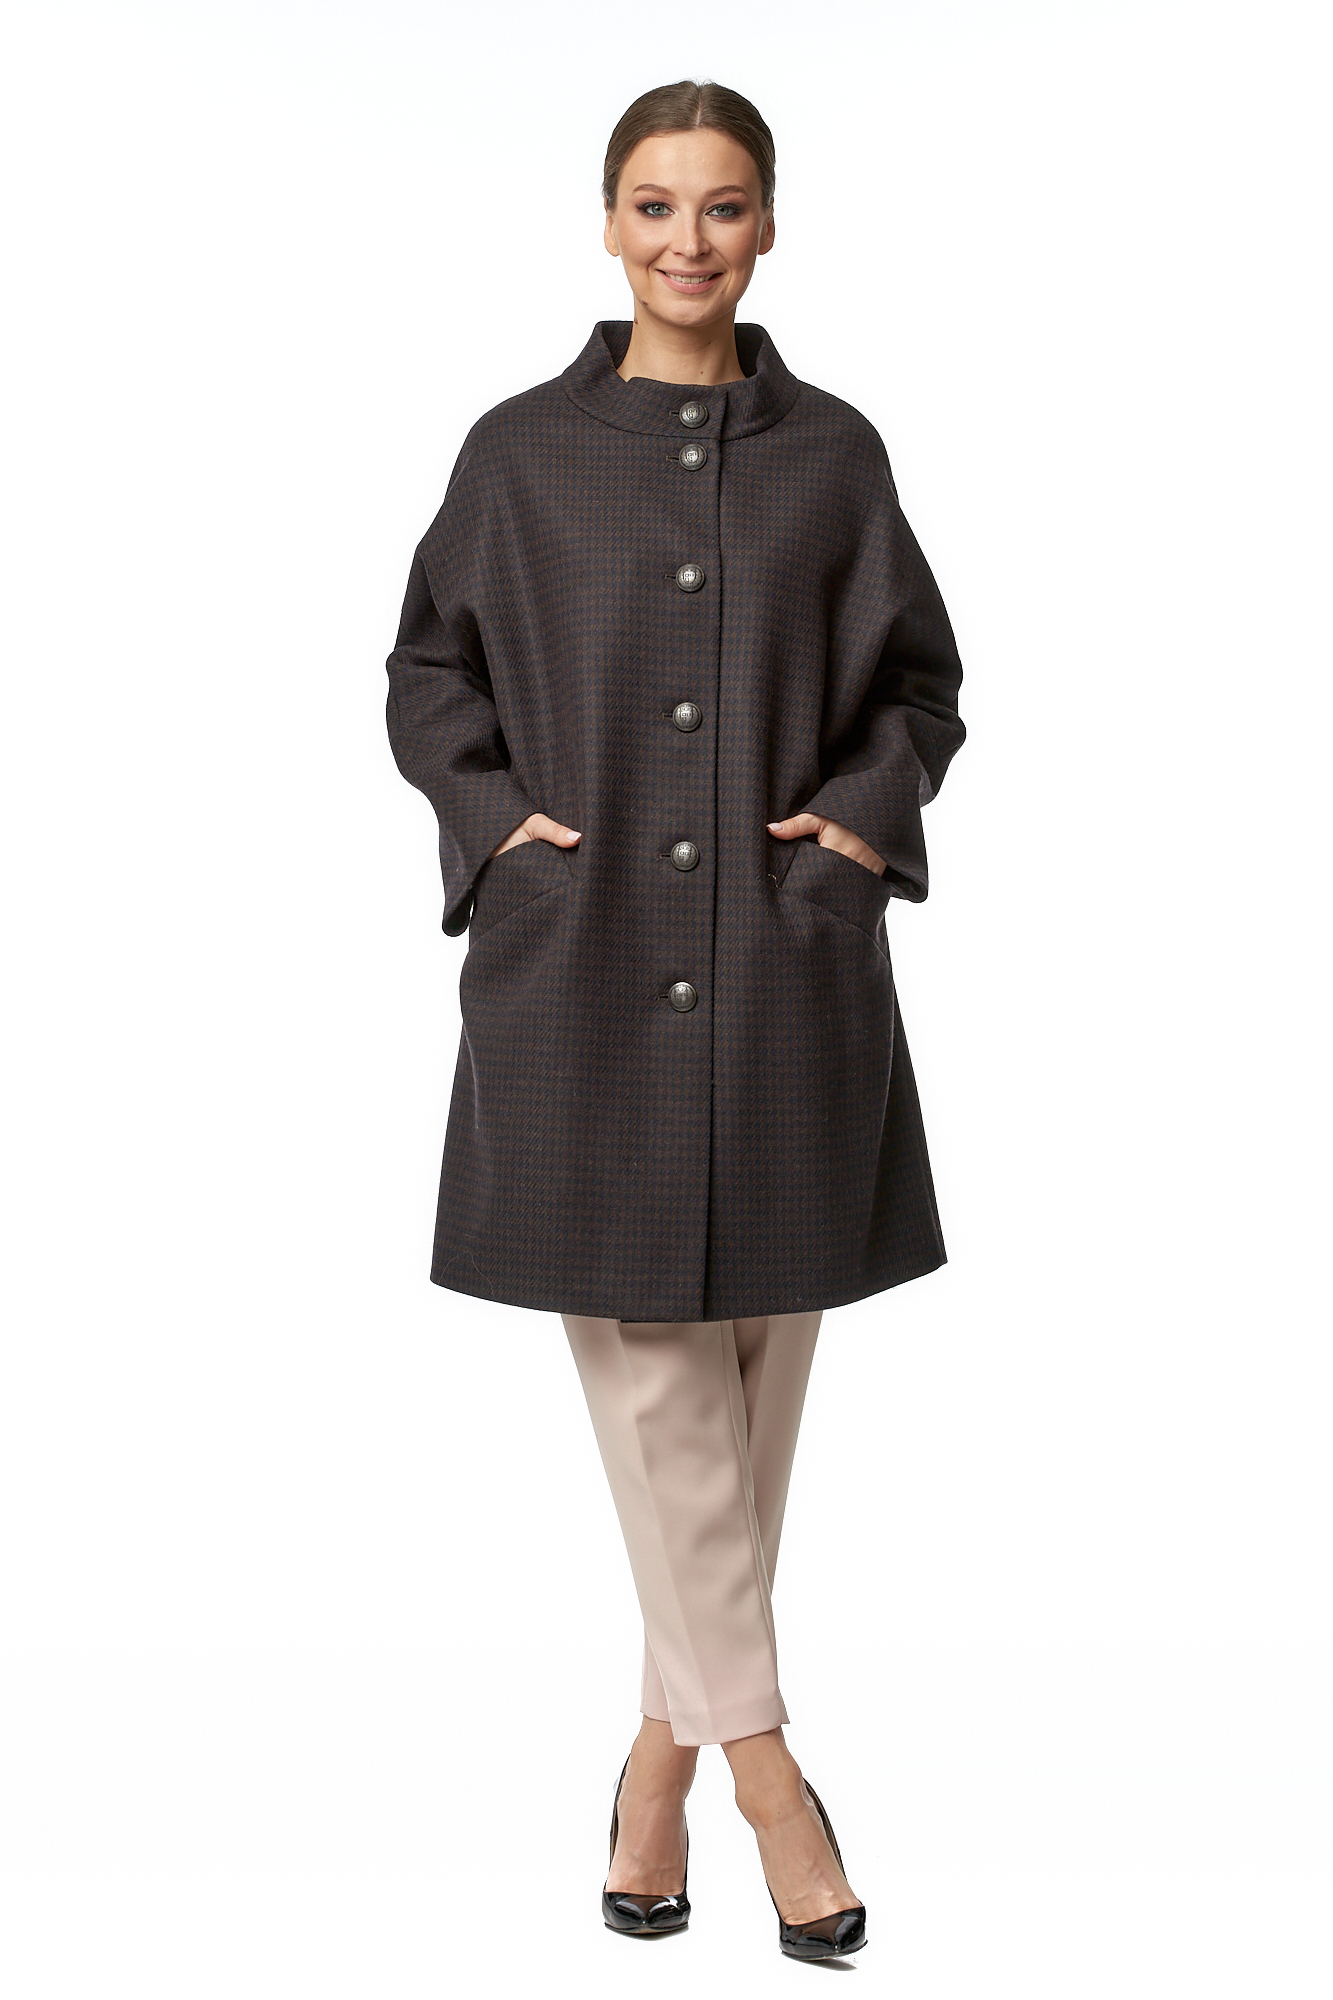 Женское пальто из текстиля с воротником МОСМЕХА коричневого цвета